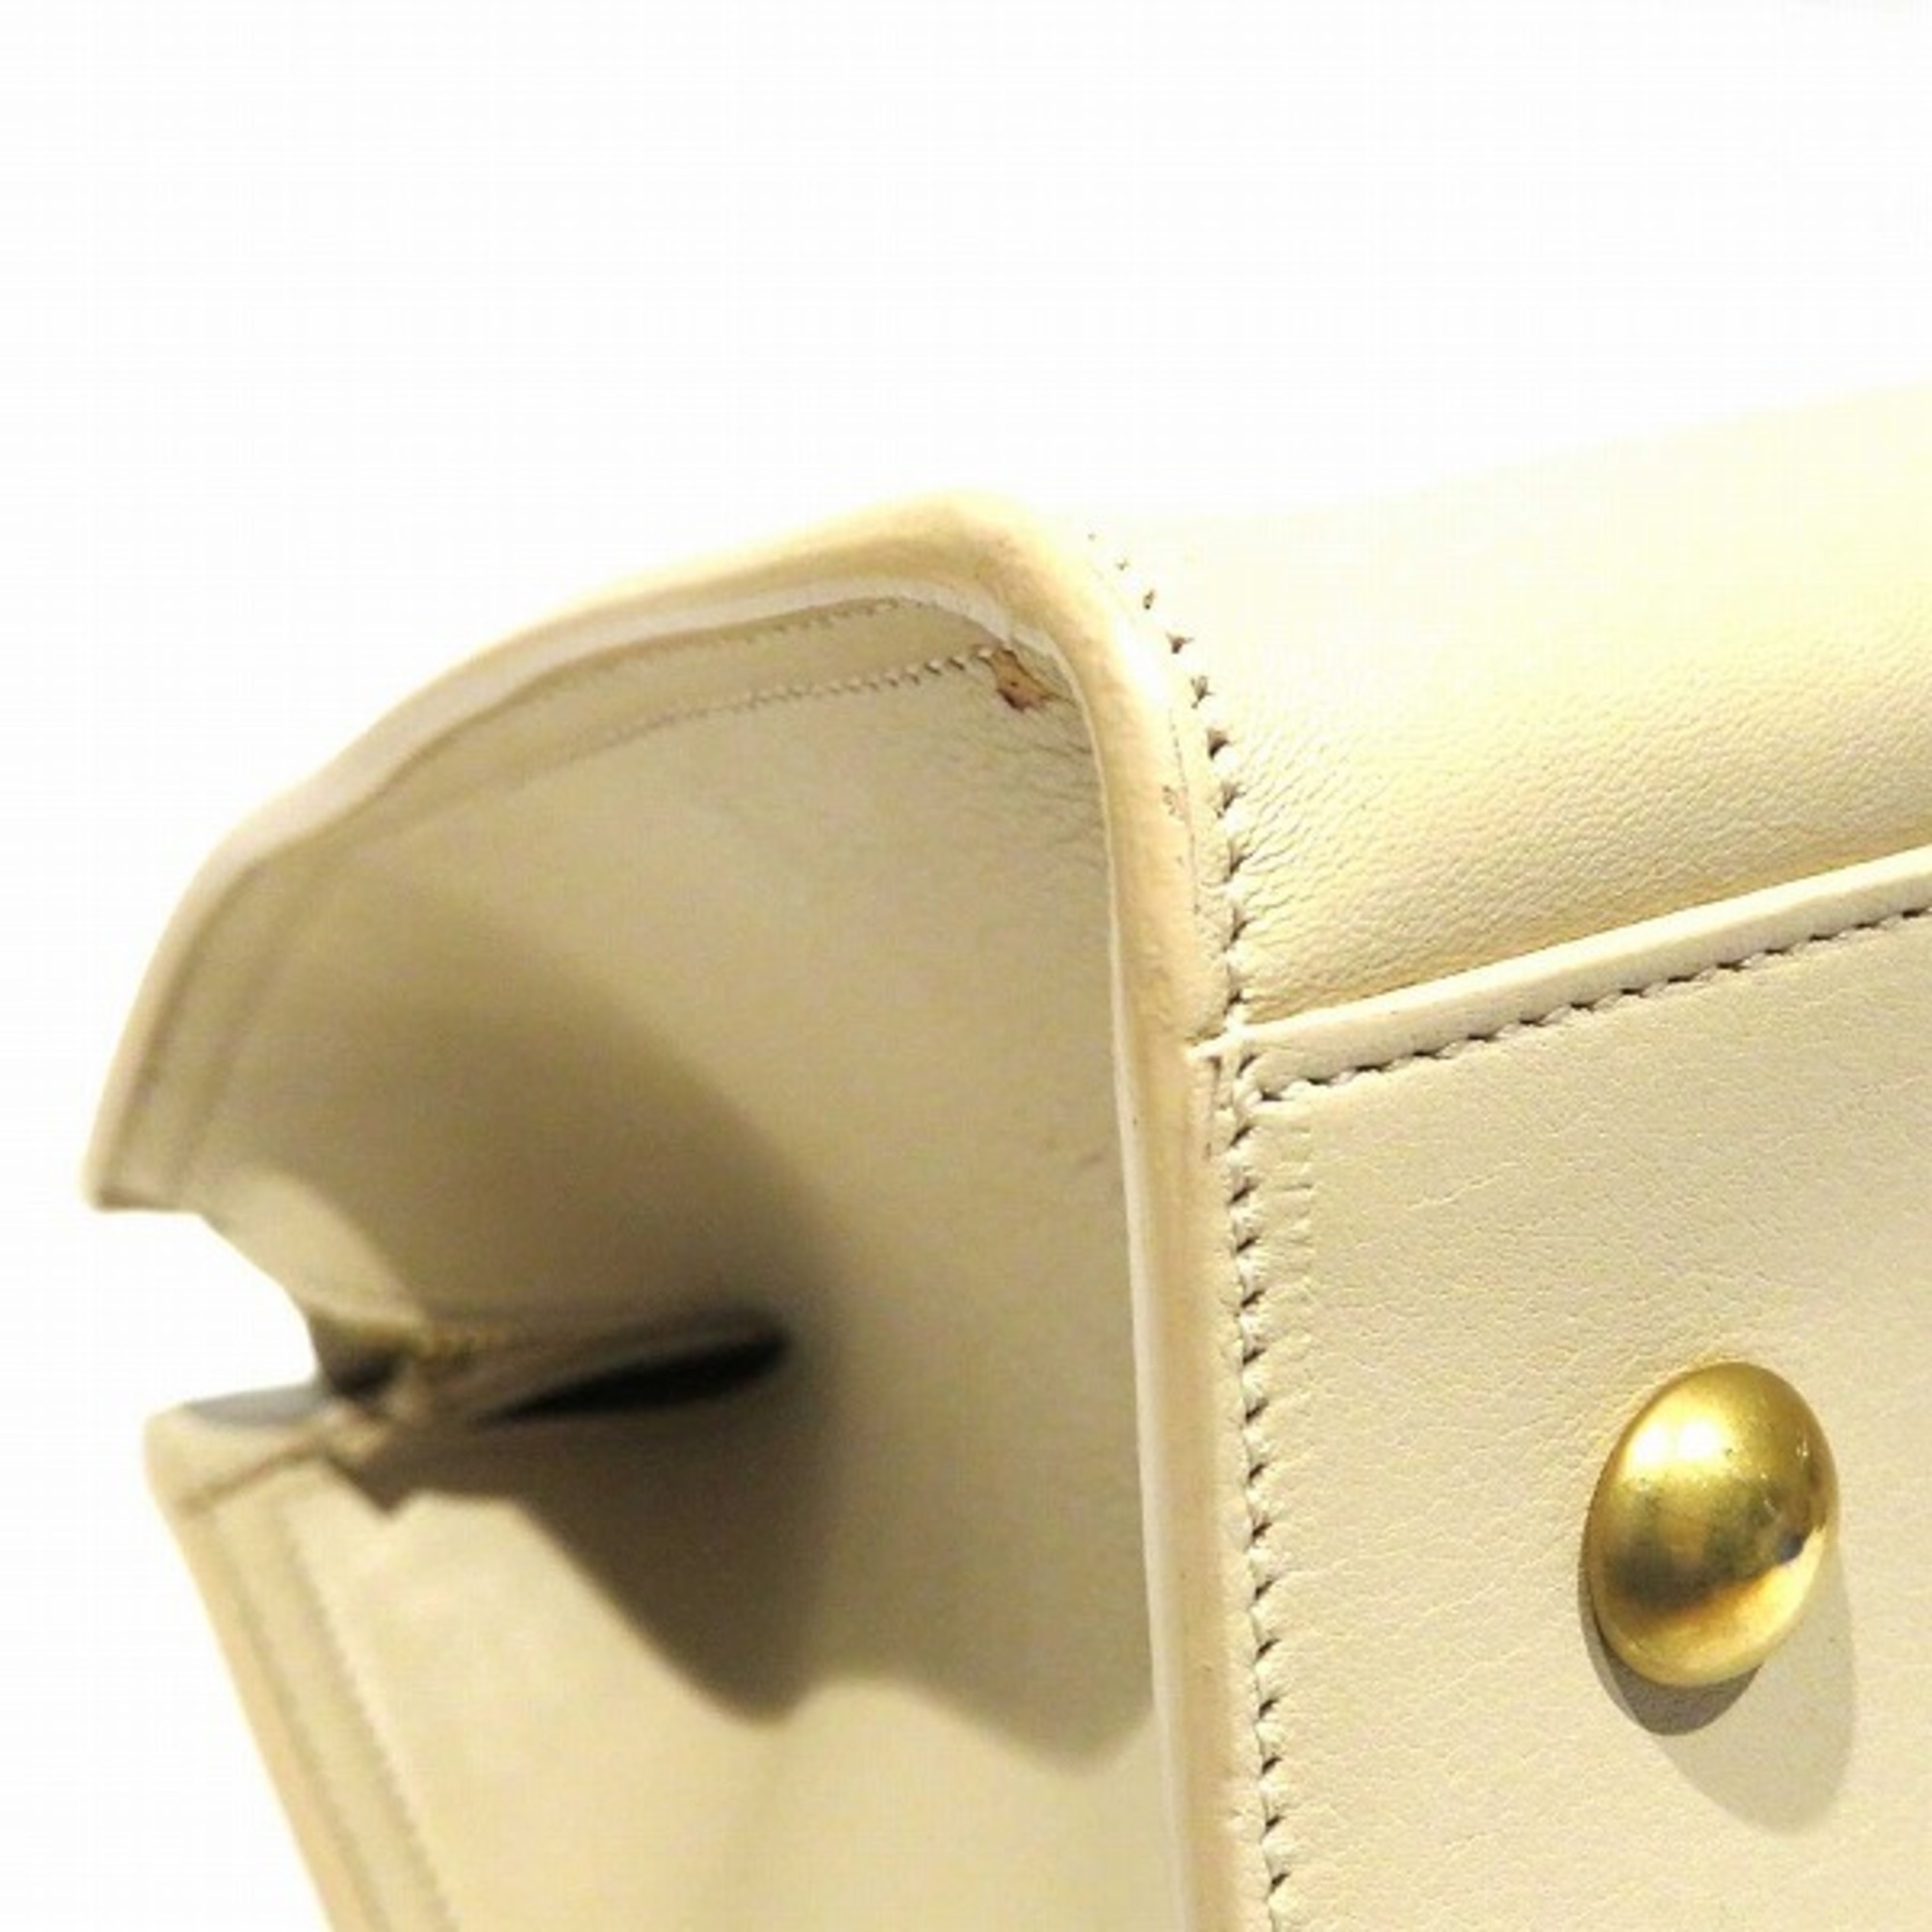 Yves Saint Laurent Petit Cabas 311210 BJ50J Bag Shoulder Ladies